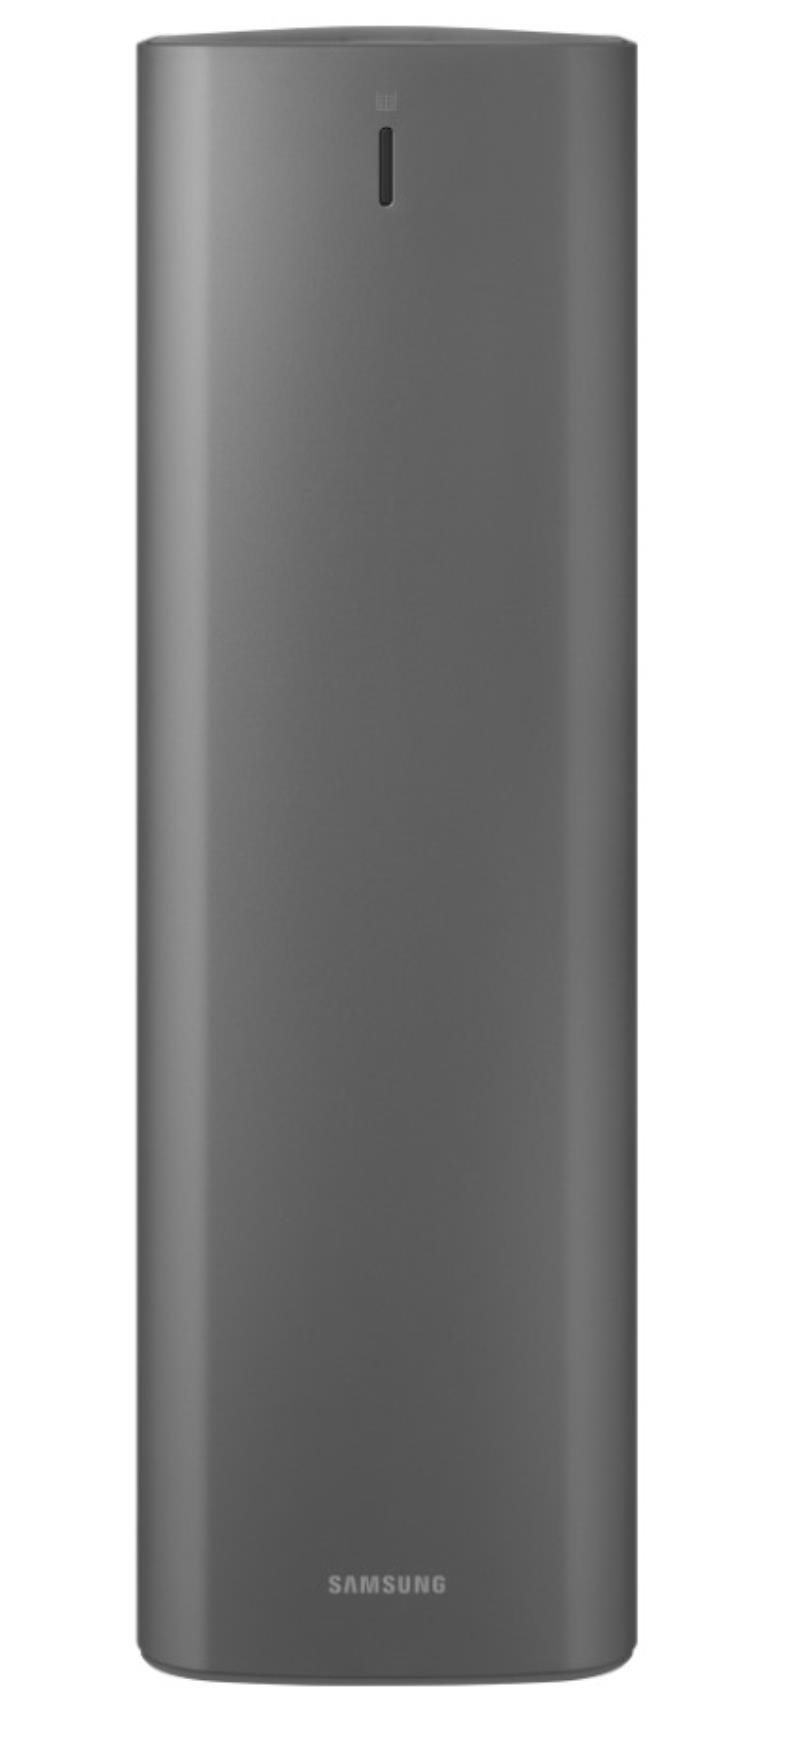 Samsung sacs d'aspirateur (sacs à poussière) Clean Station 5 pcs